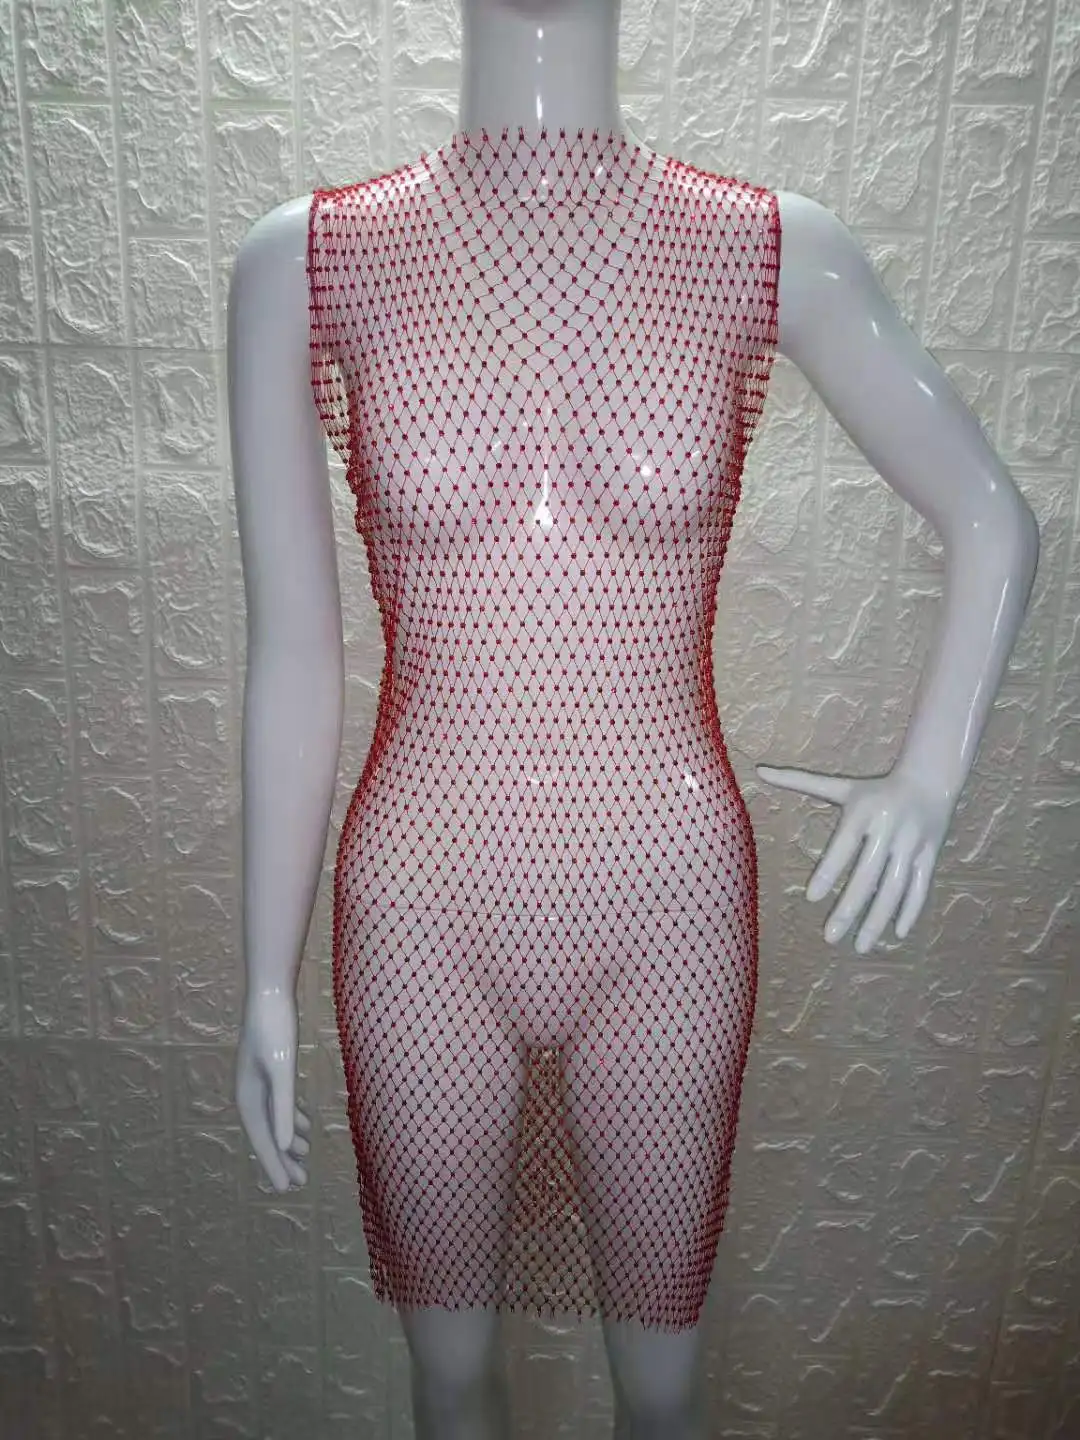 Bkning крючком пляжное бикини покрытие купальный костюм сексуальный прозрачный купальный костюм шикарное парео платье женская пляжная одежда - Color: red